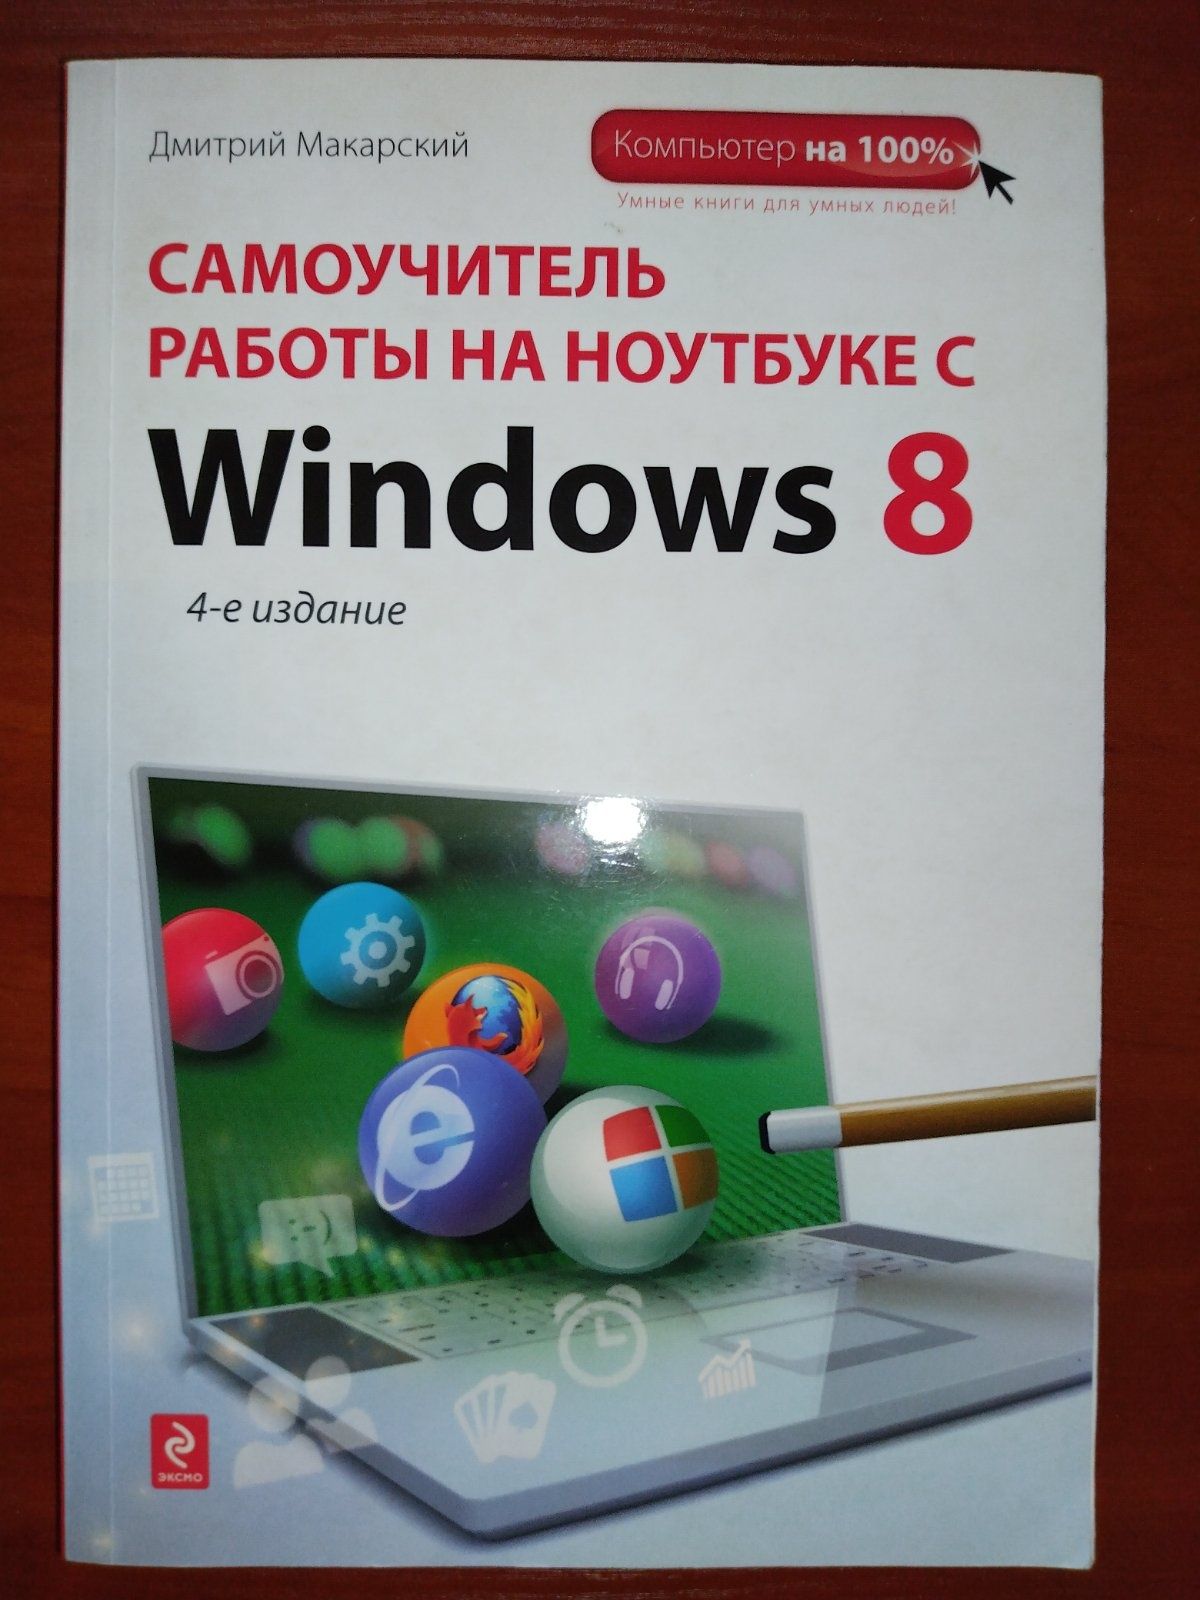 Дмитрий Макарский.Самоучитель работы на ноутбуке с Windows 8.304 стр.